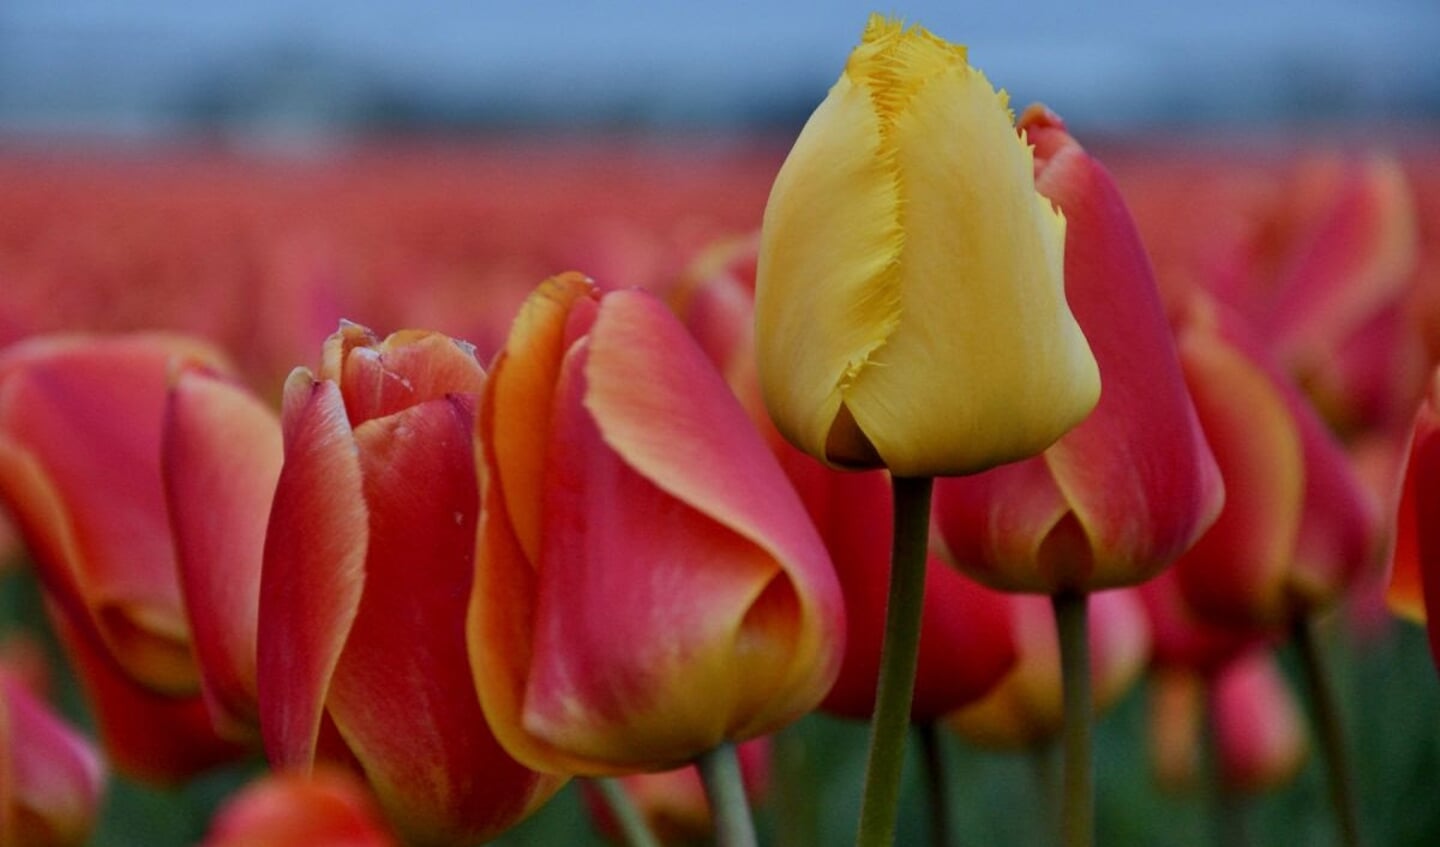 Tulpen zijn typisch Nederlands. Maar de gele tulp is weer anders dan de rest. Daarmee wil ik aangeven dat je in Nederland niet allemaal gelijk hoeft te zijn; je mag best anders zijn dan de rest.